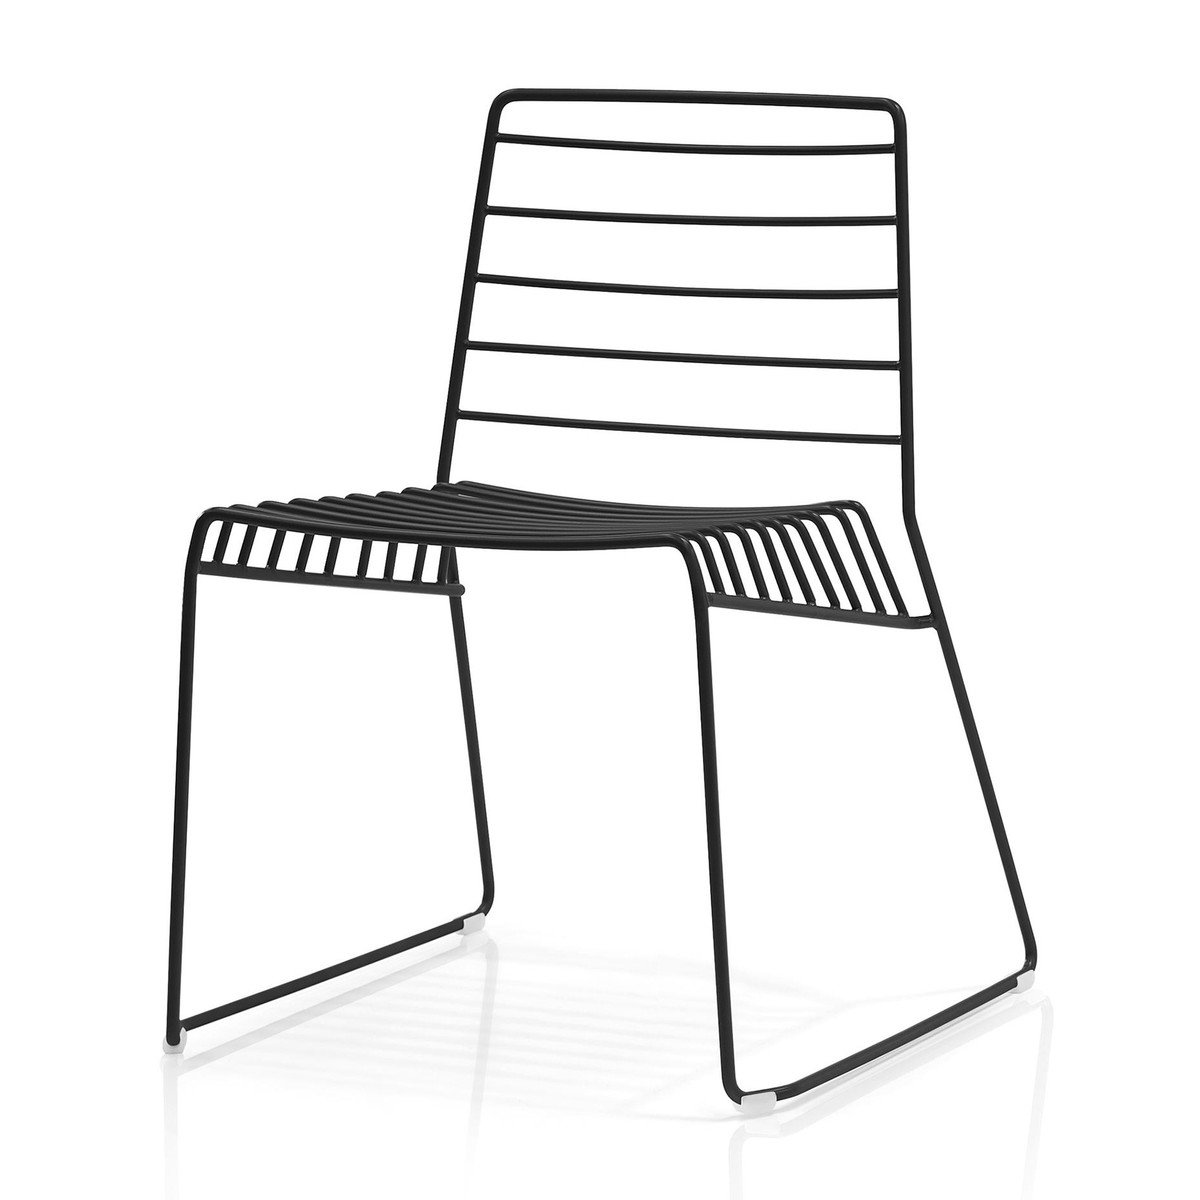 PARK chair - set of 2 pieces